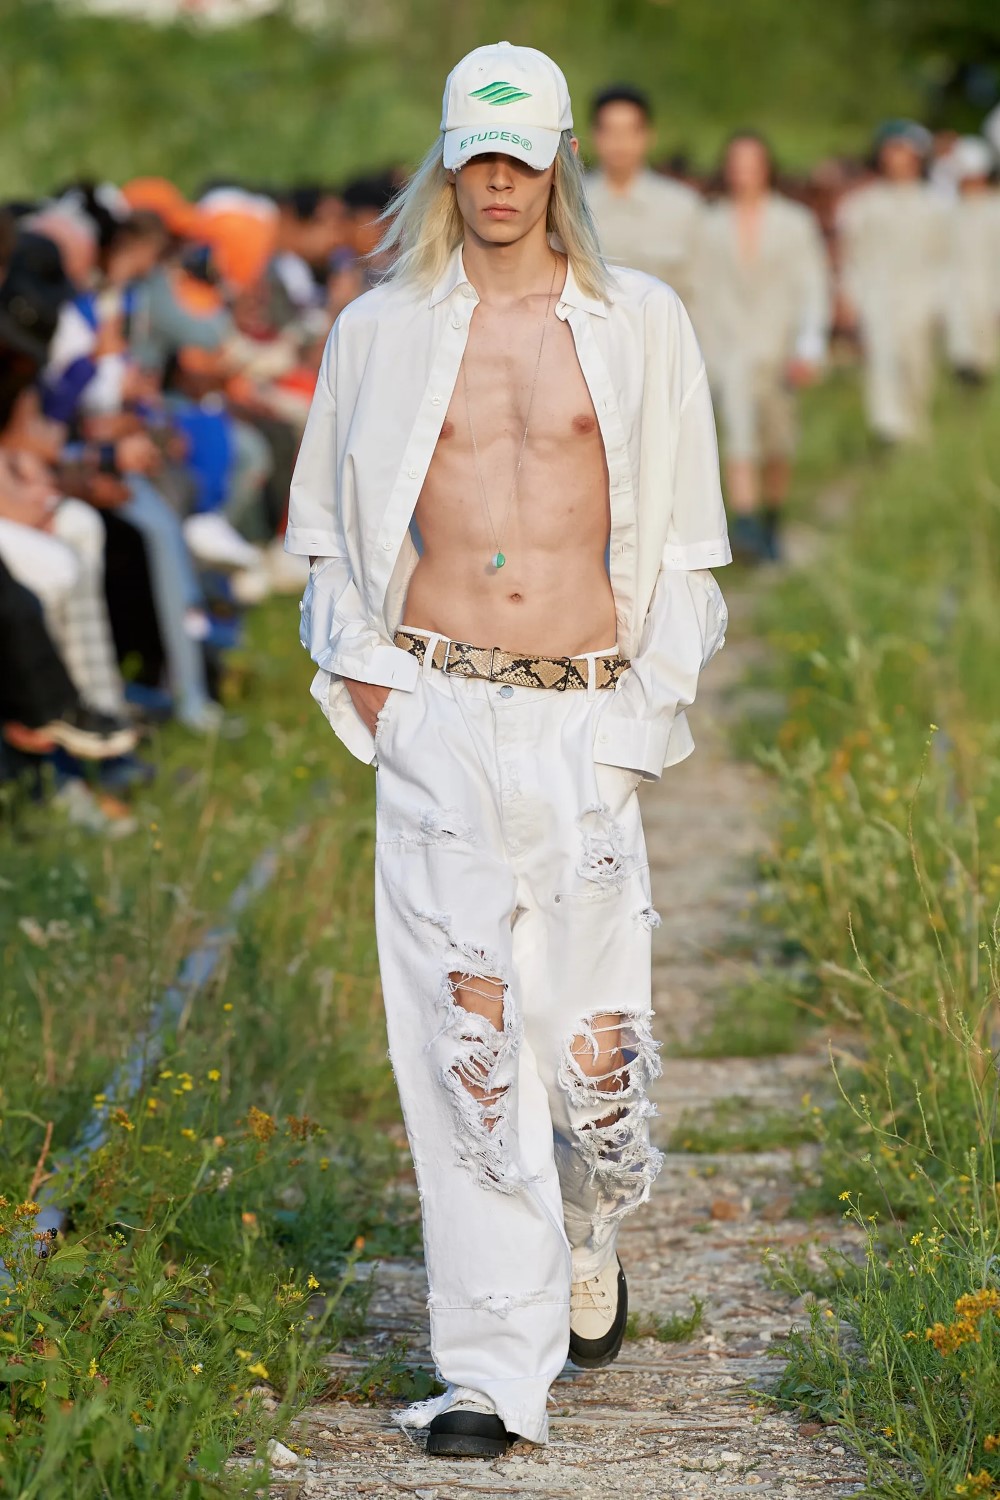 Études Spring/Summer 2023 - Paris Fashion Week Men’s